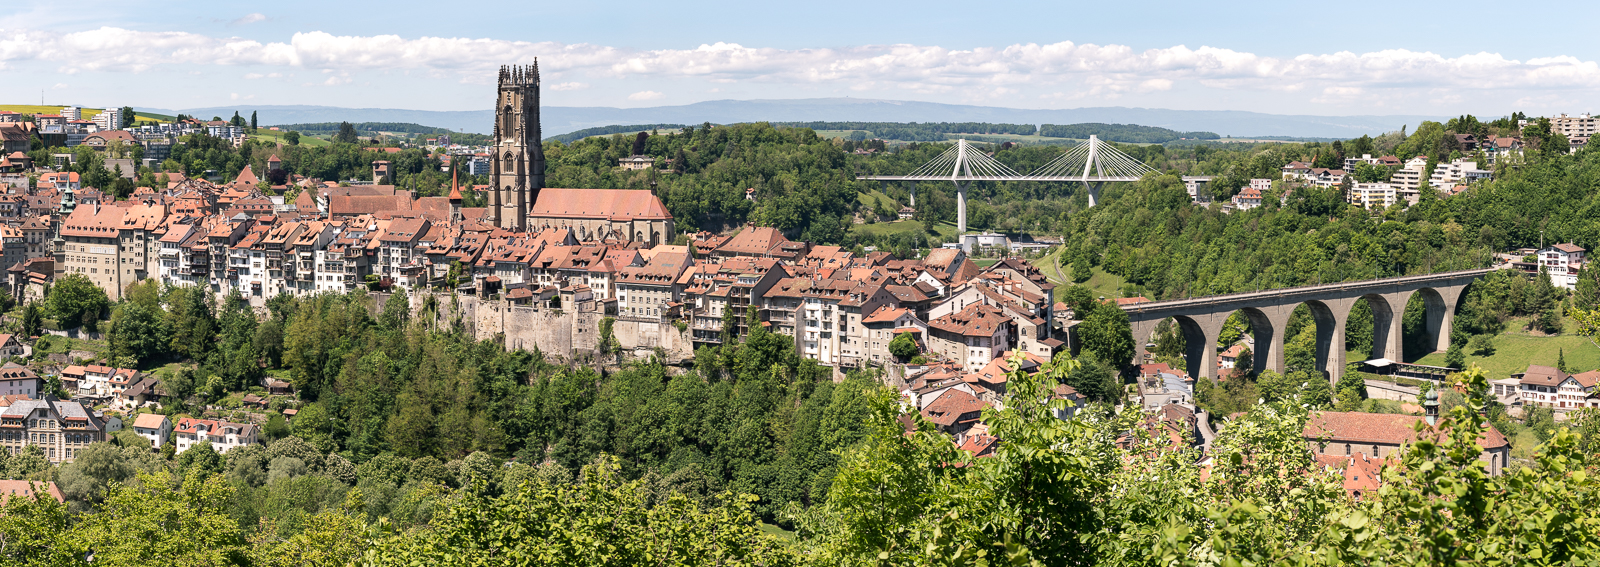 Altstadt von Fribourg